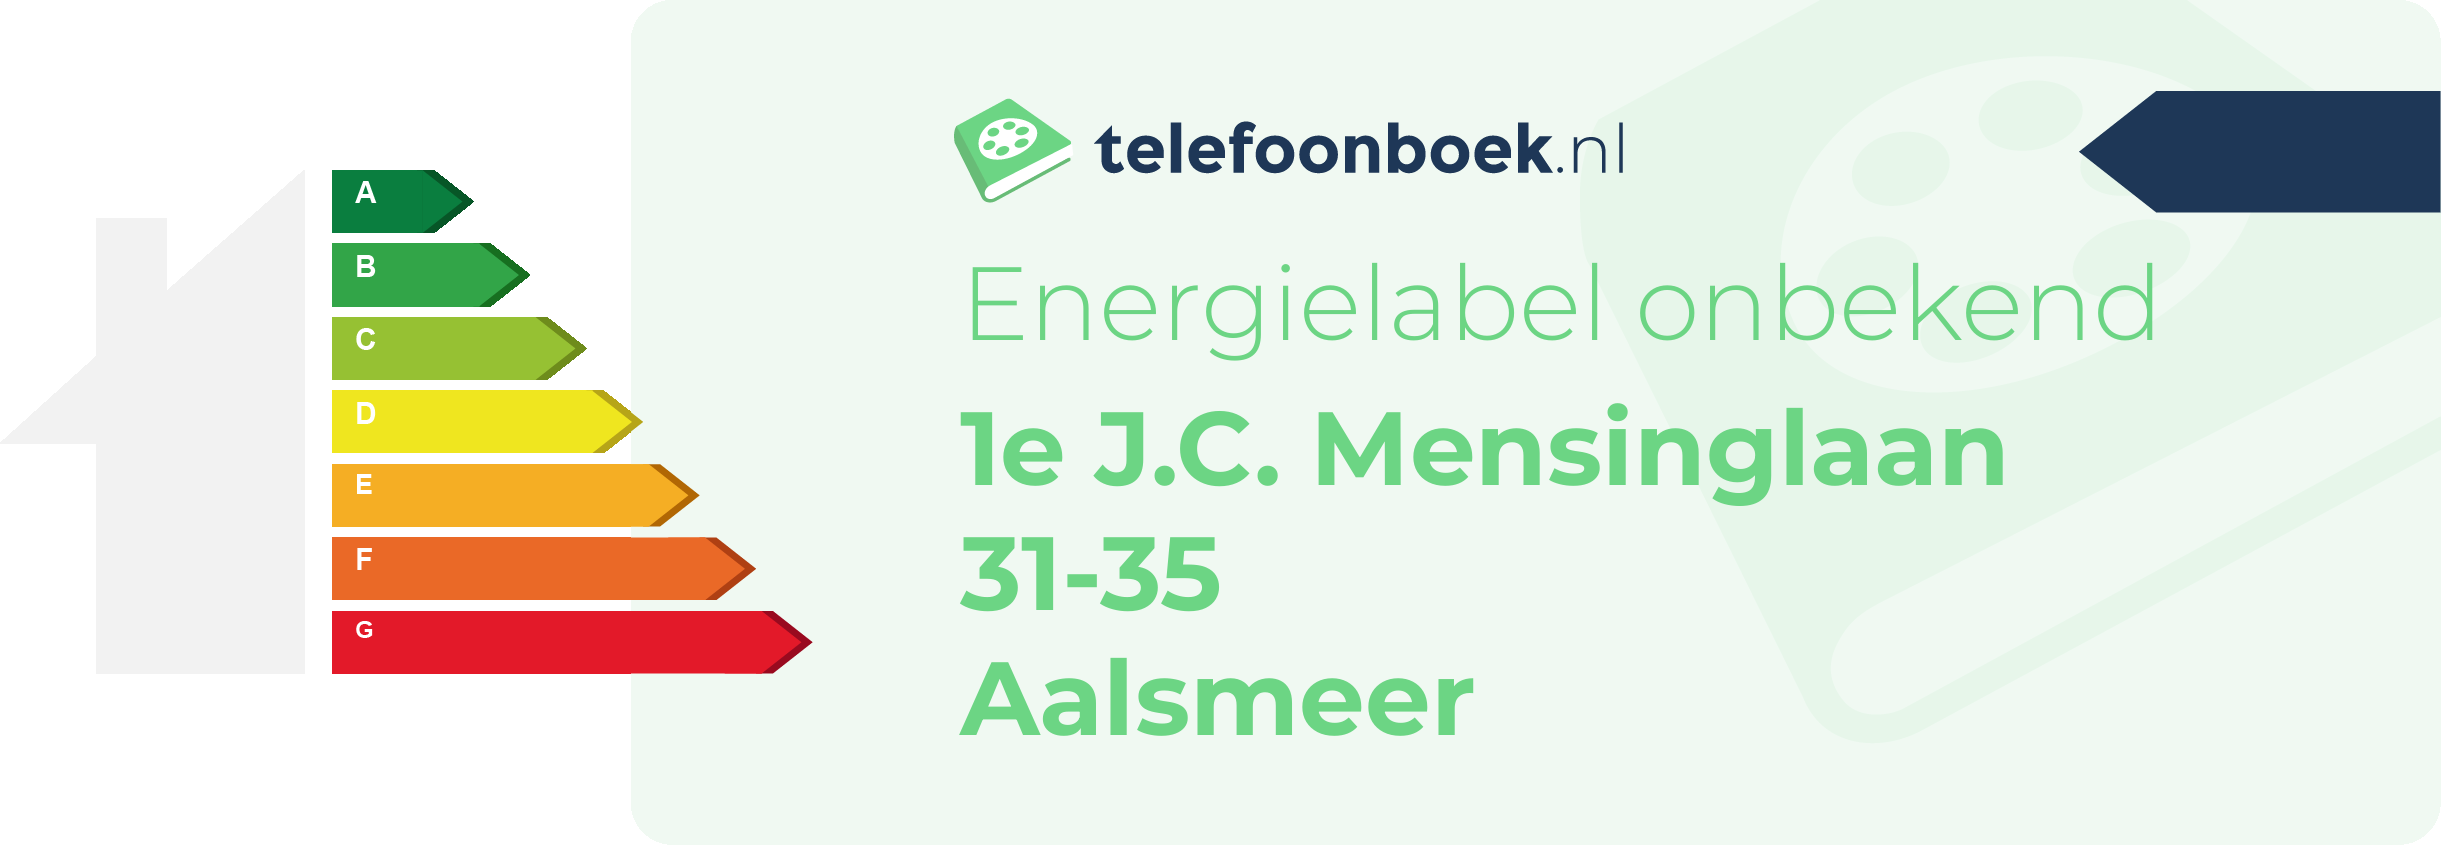 Energielabel 1e J.C. Mensinglaan 31-35 Aalsmeer